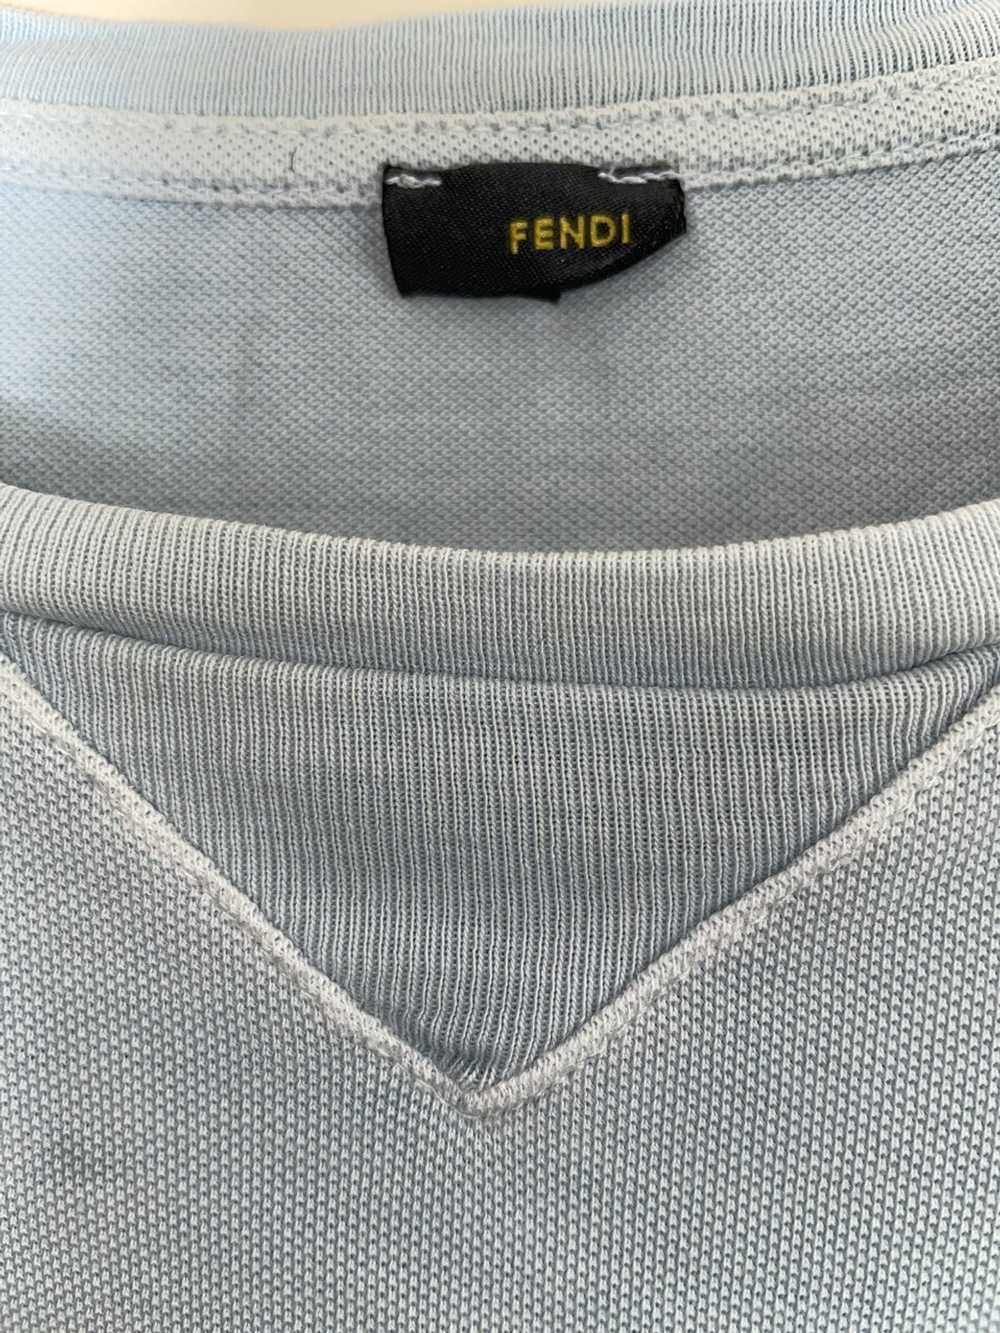 Fendi × Vintage Fendi tee shirt - image 8